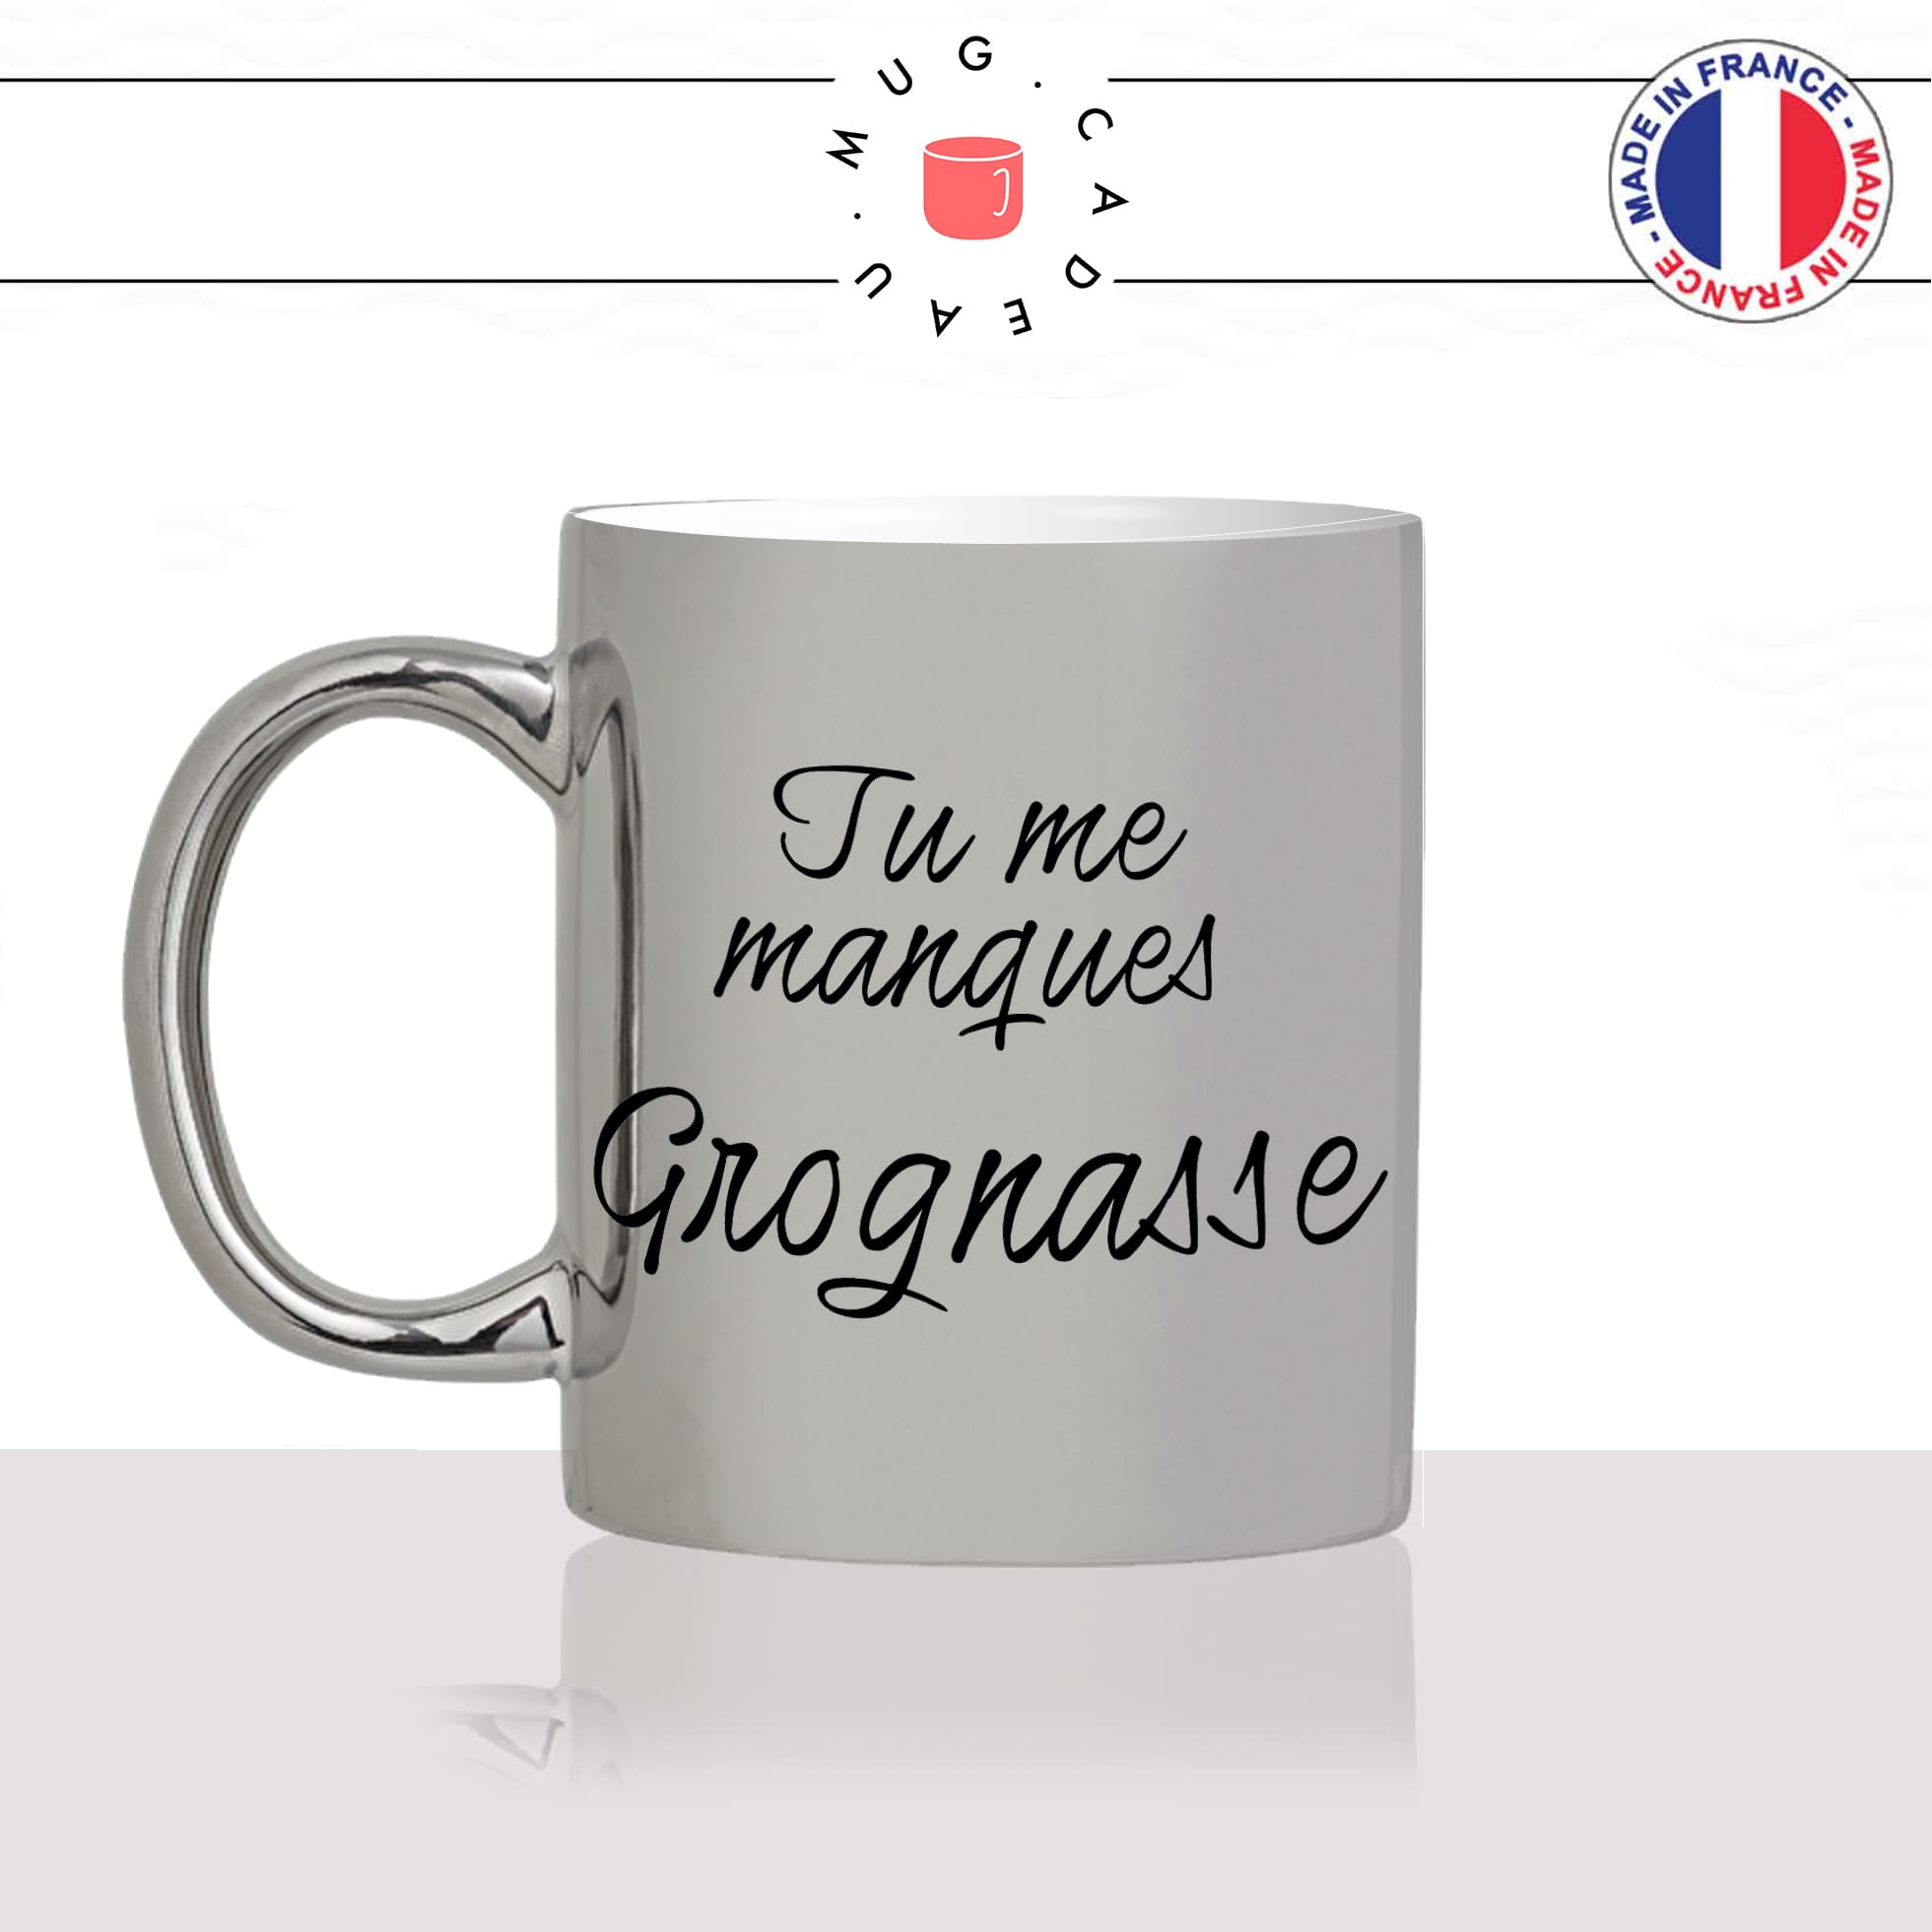 mug-tasse-argenté-argent-gris-silver-tu-me-manques-grognasse-copine-collegue-homme-femme-parodie-humour-fun-cool-idée-cadeau-original